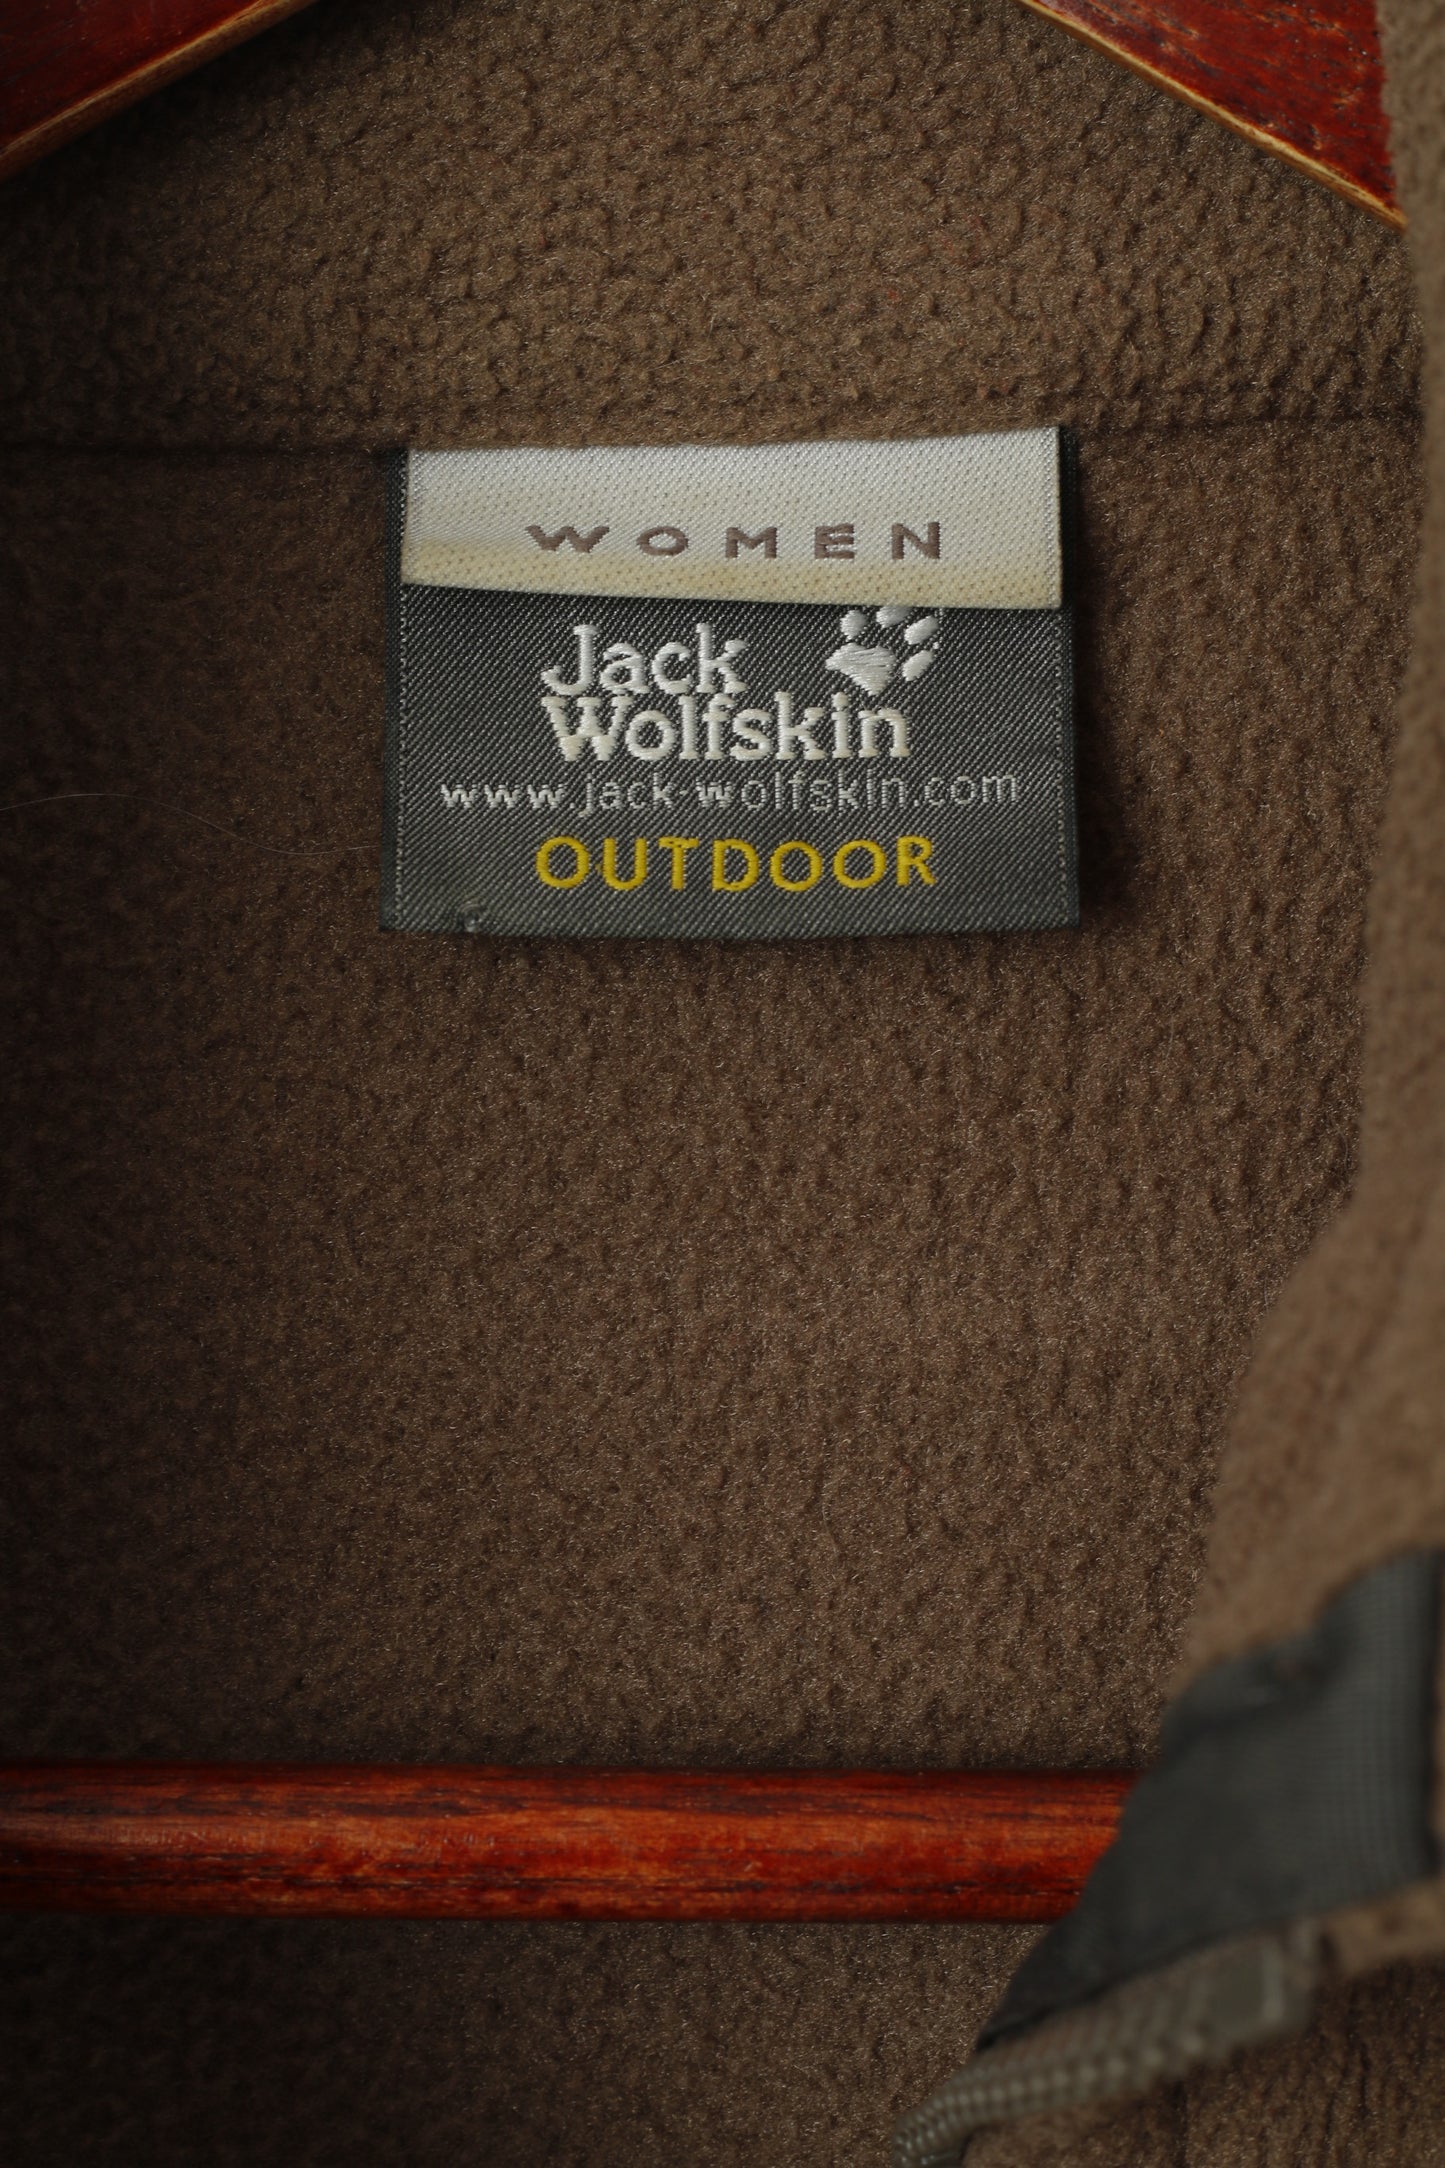 Jack Wolfskin Women XS Fleece Top Brown Outdoor Full Zipper Sweatshirt